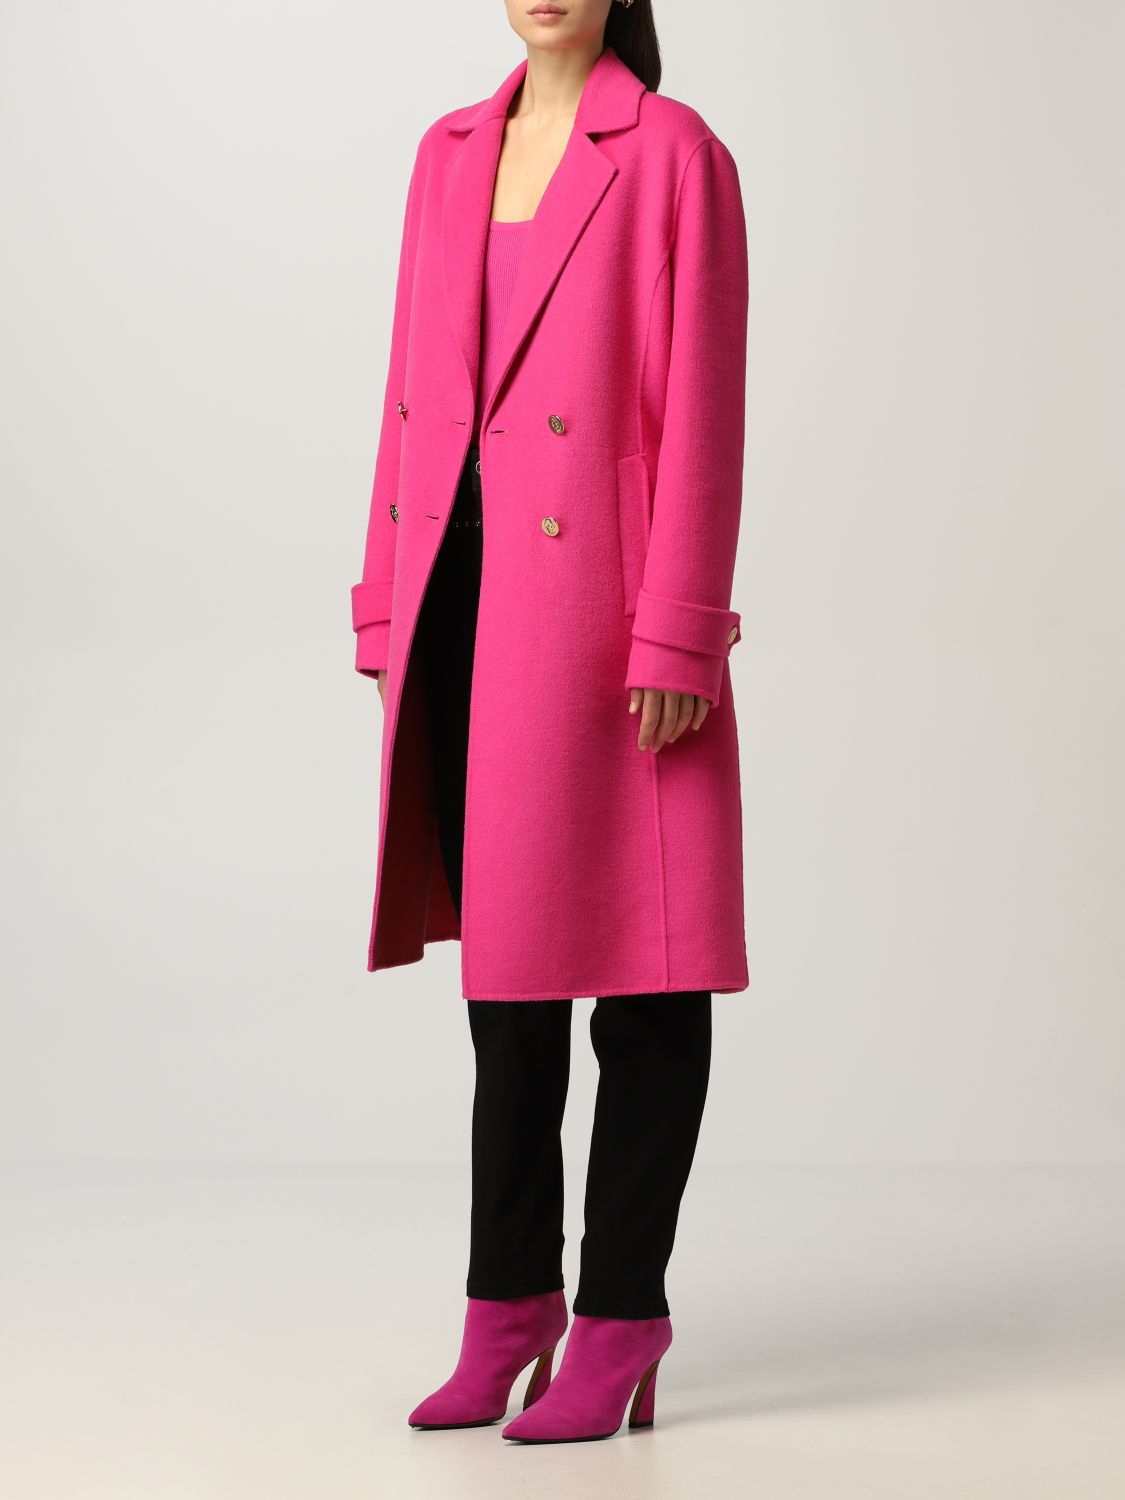 Liu Jo double-breasted coat in wool blend